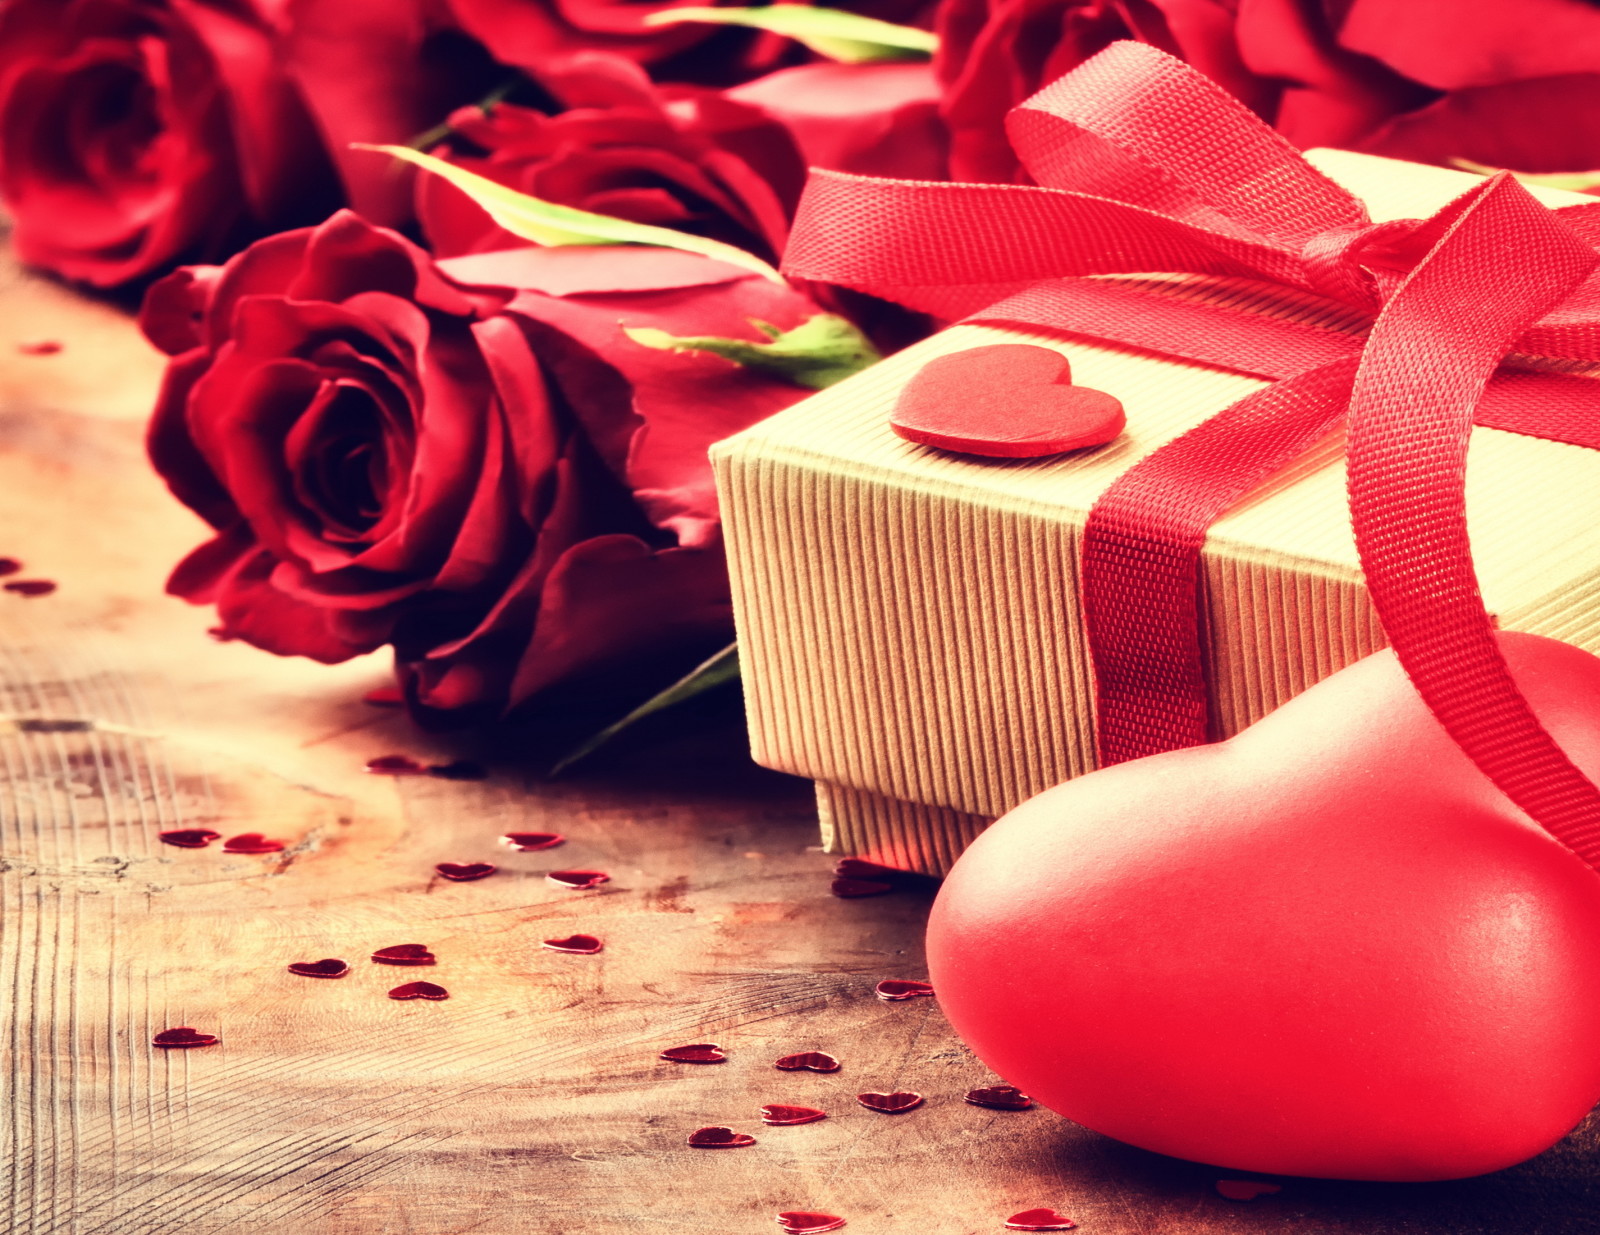 爱, 浪漫, 情人节, 礼品, 玫瑰花, 心